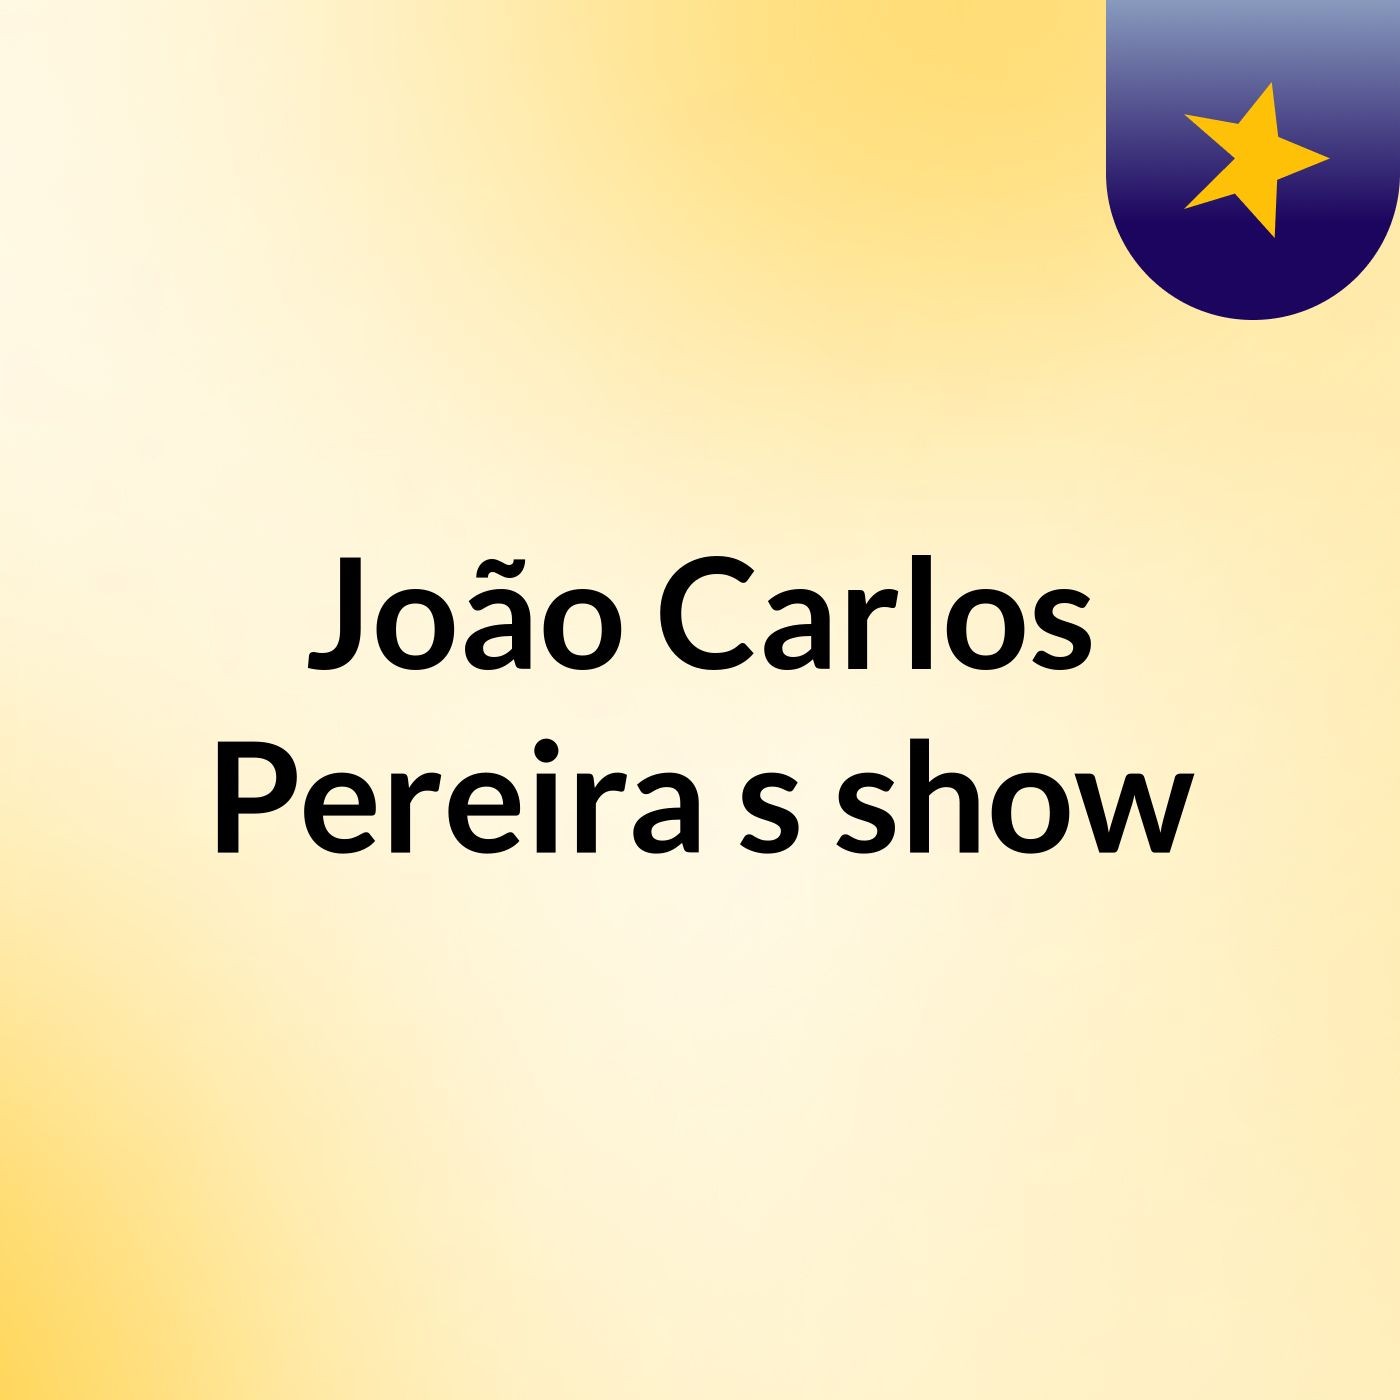 João Carlos Pereira's show